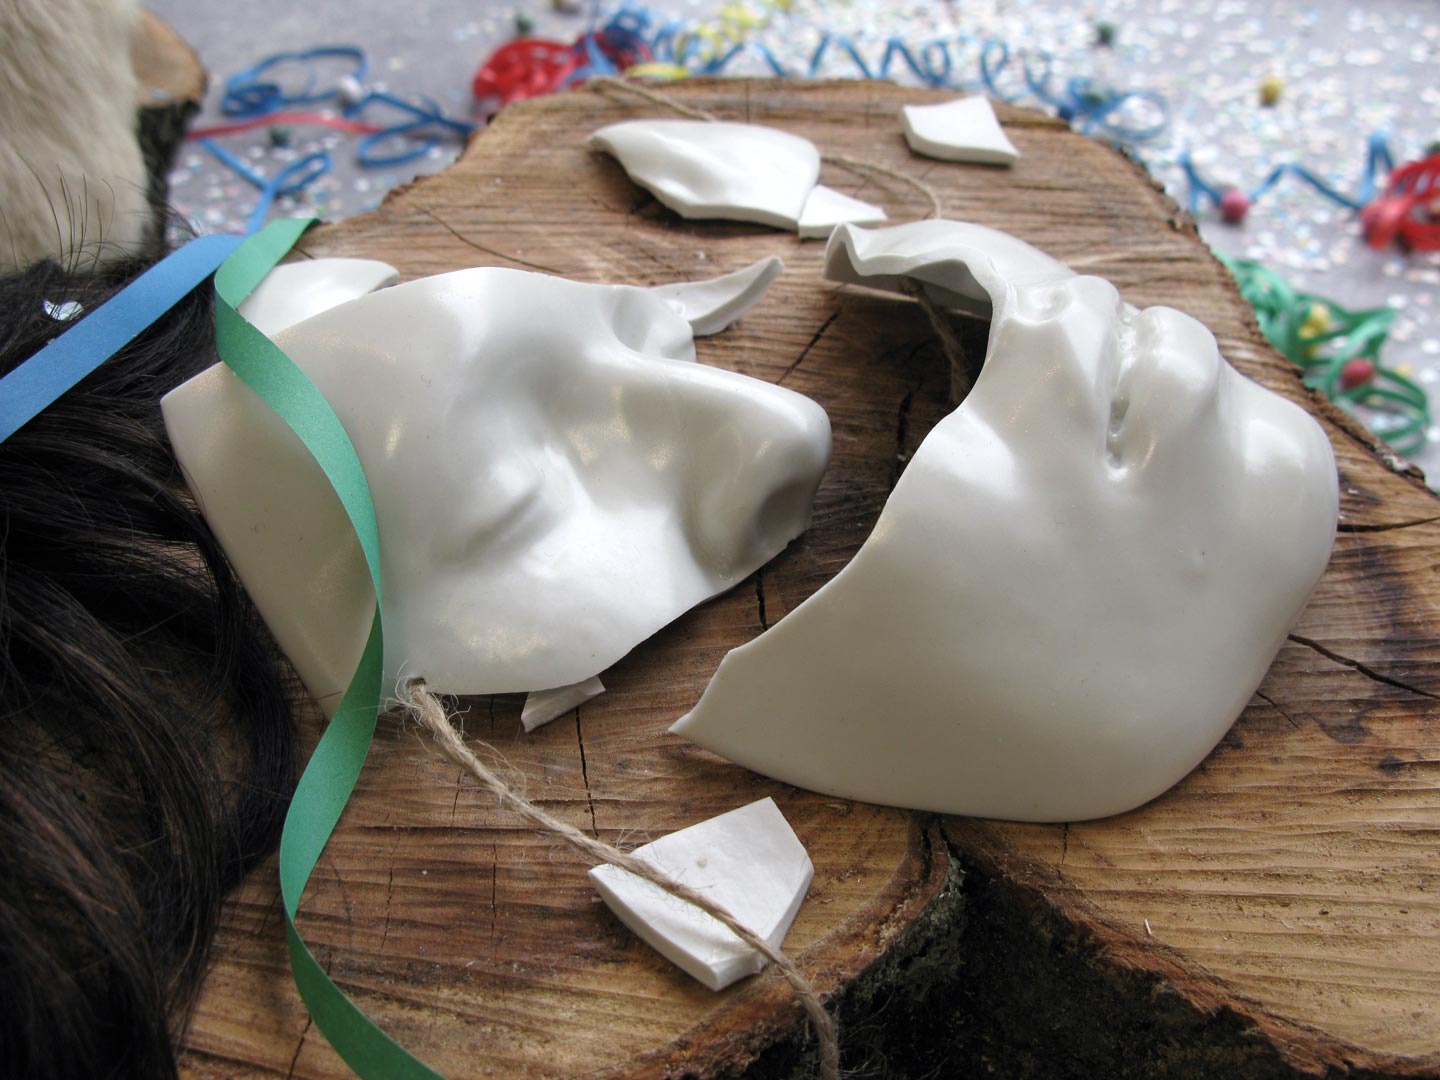 Vues de l'installation intitulée "Joyeuses Pétoches". Focus resserré sur le personnage morcelé du centre au masque cassé. Le personnage est déposé sur un tronc d'arbre. Son masque est en porcelaine émaillée blanche. Il est brisé.